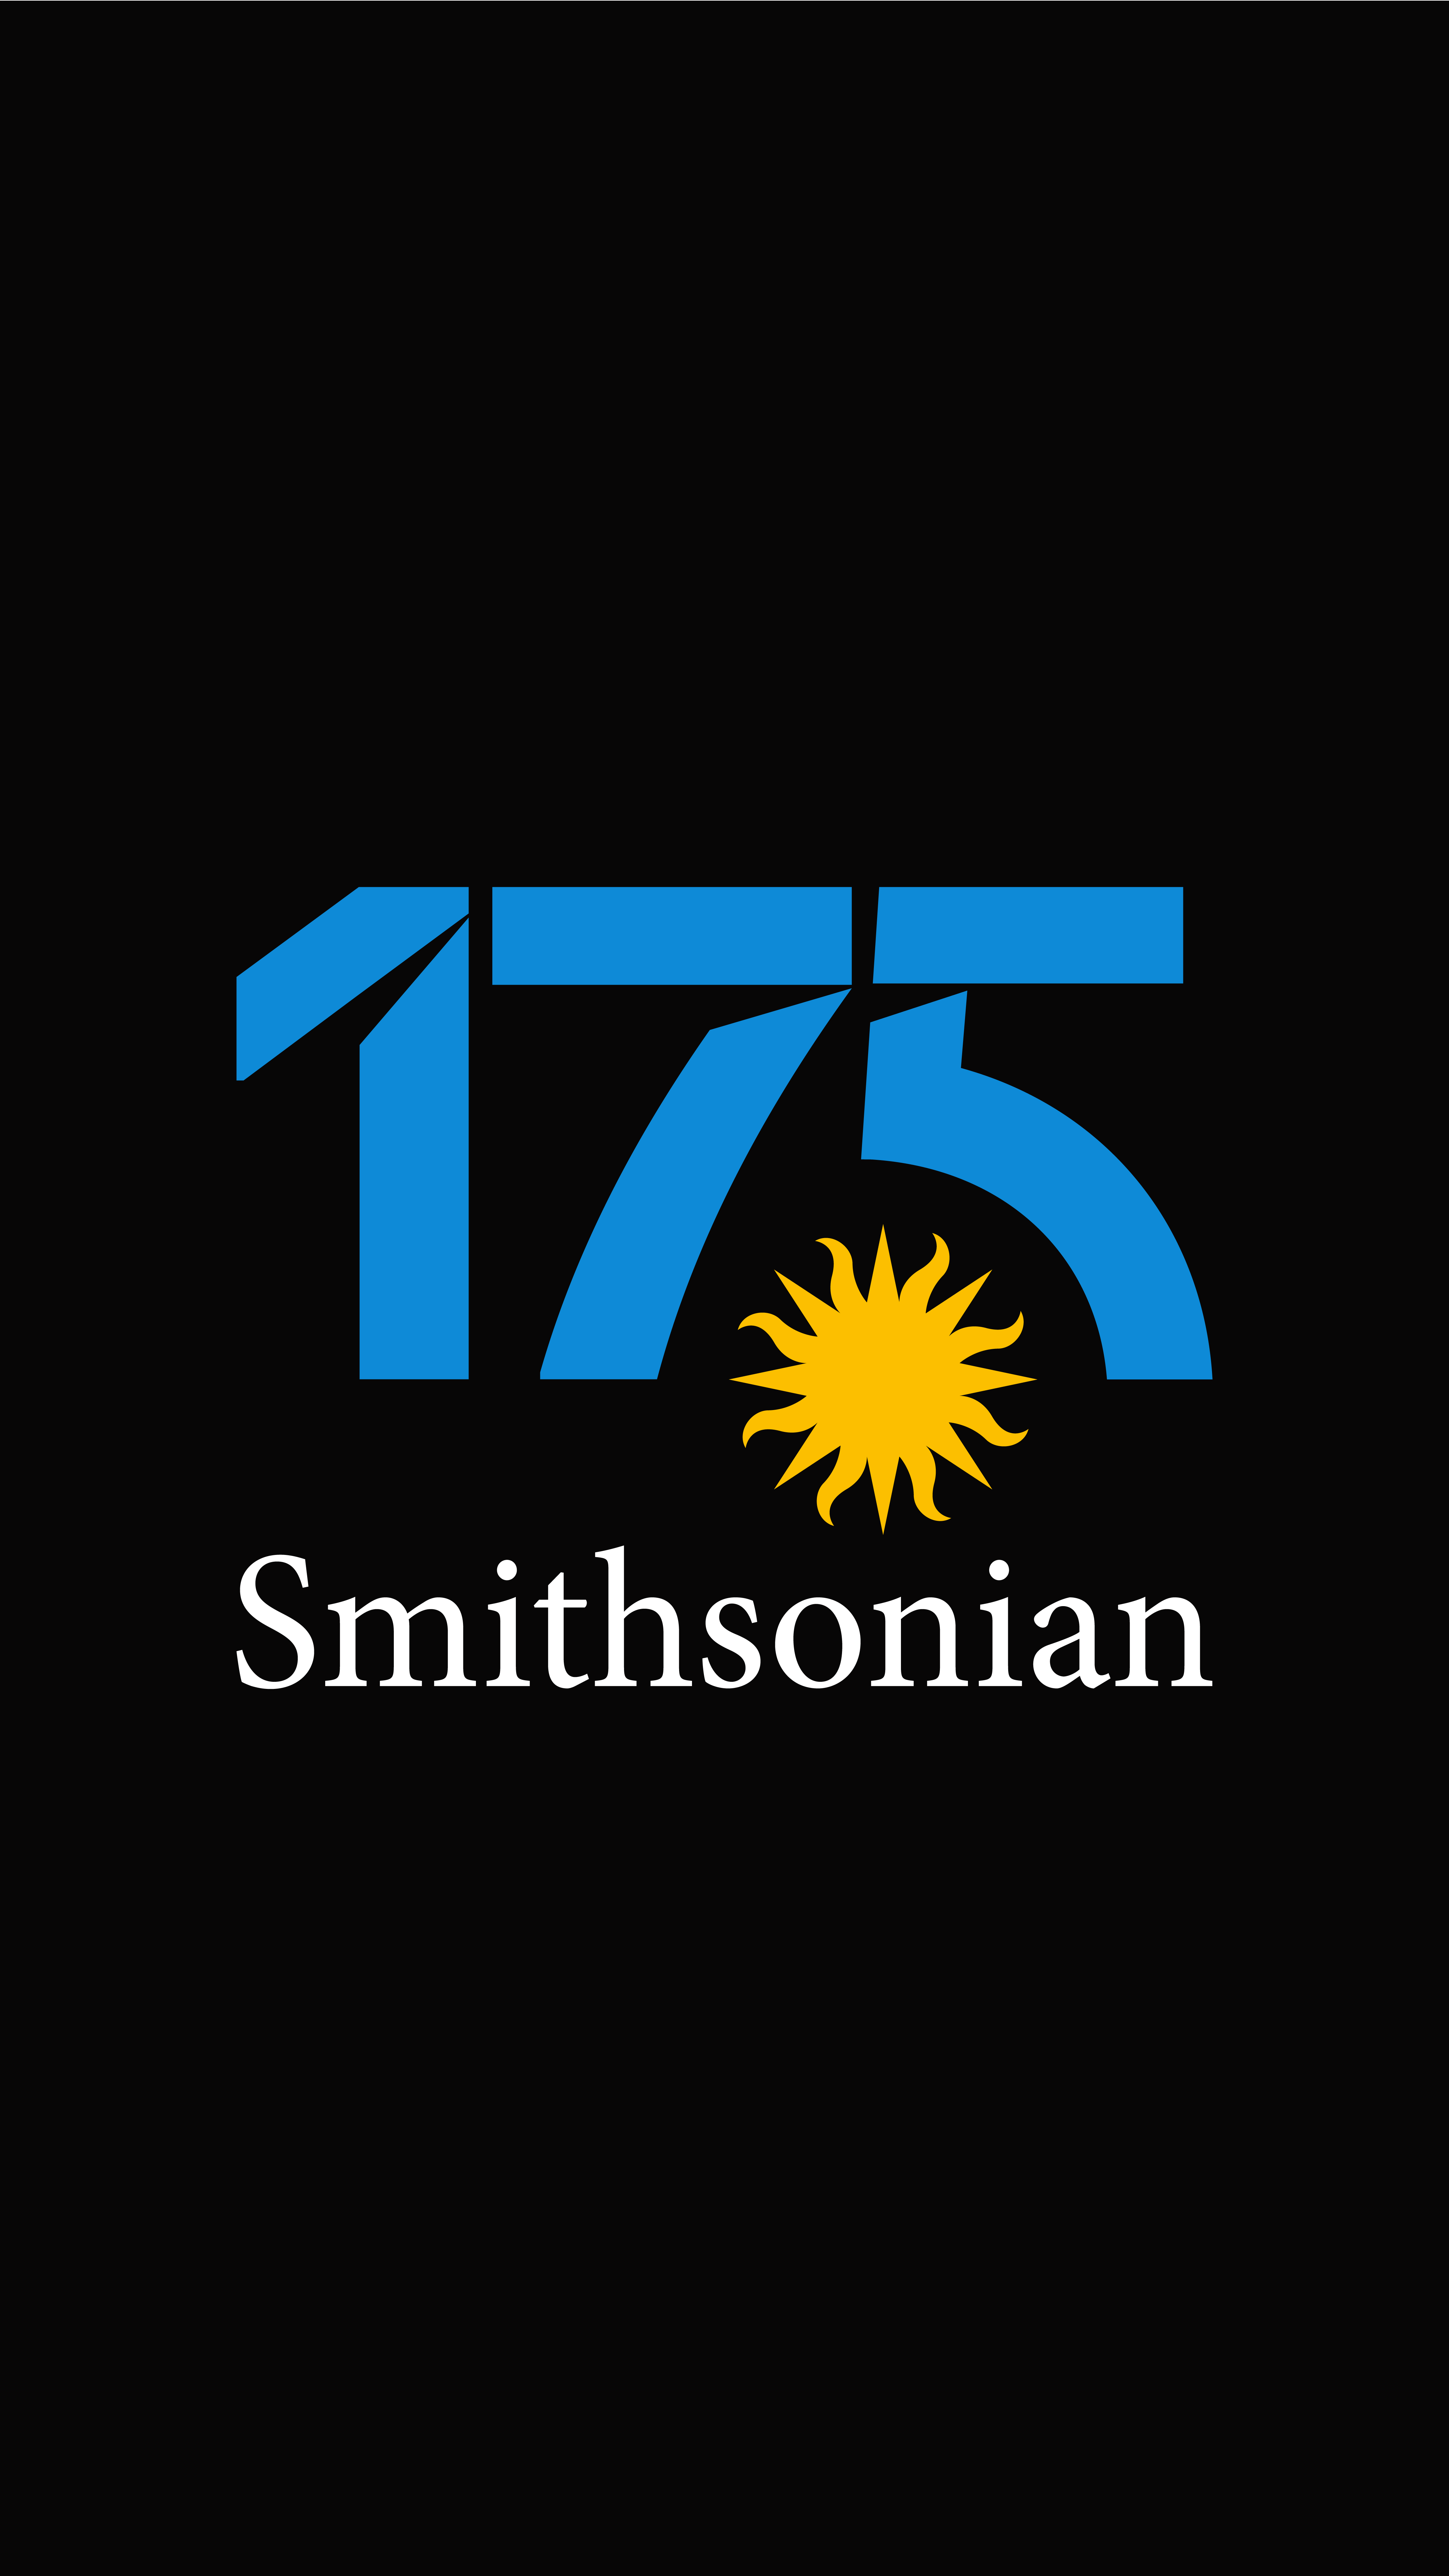 si175-logo-variations-01